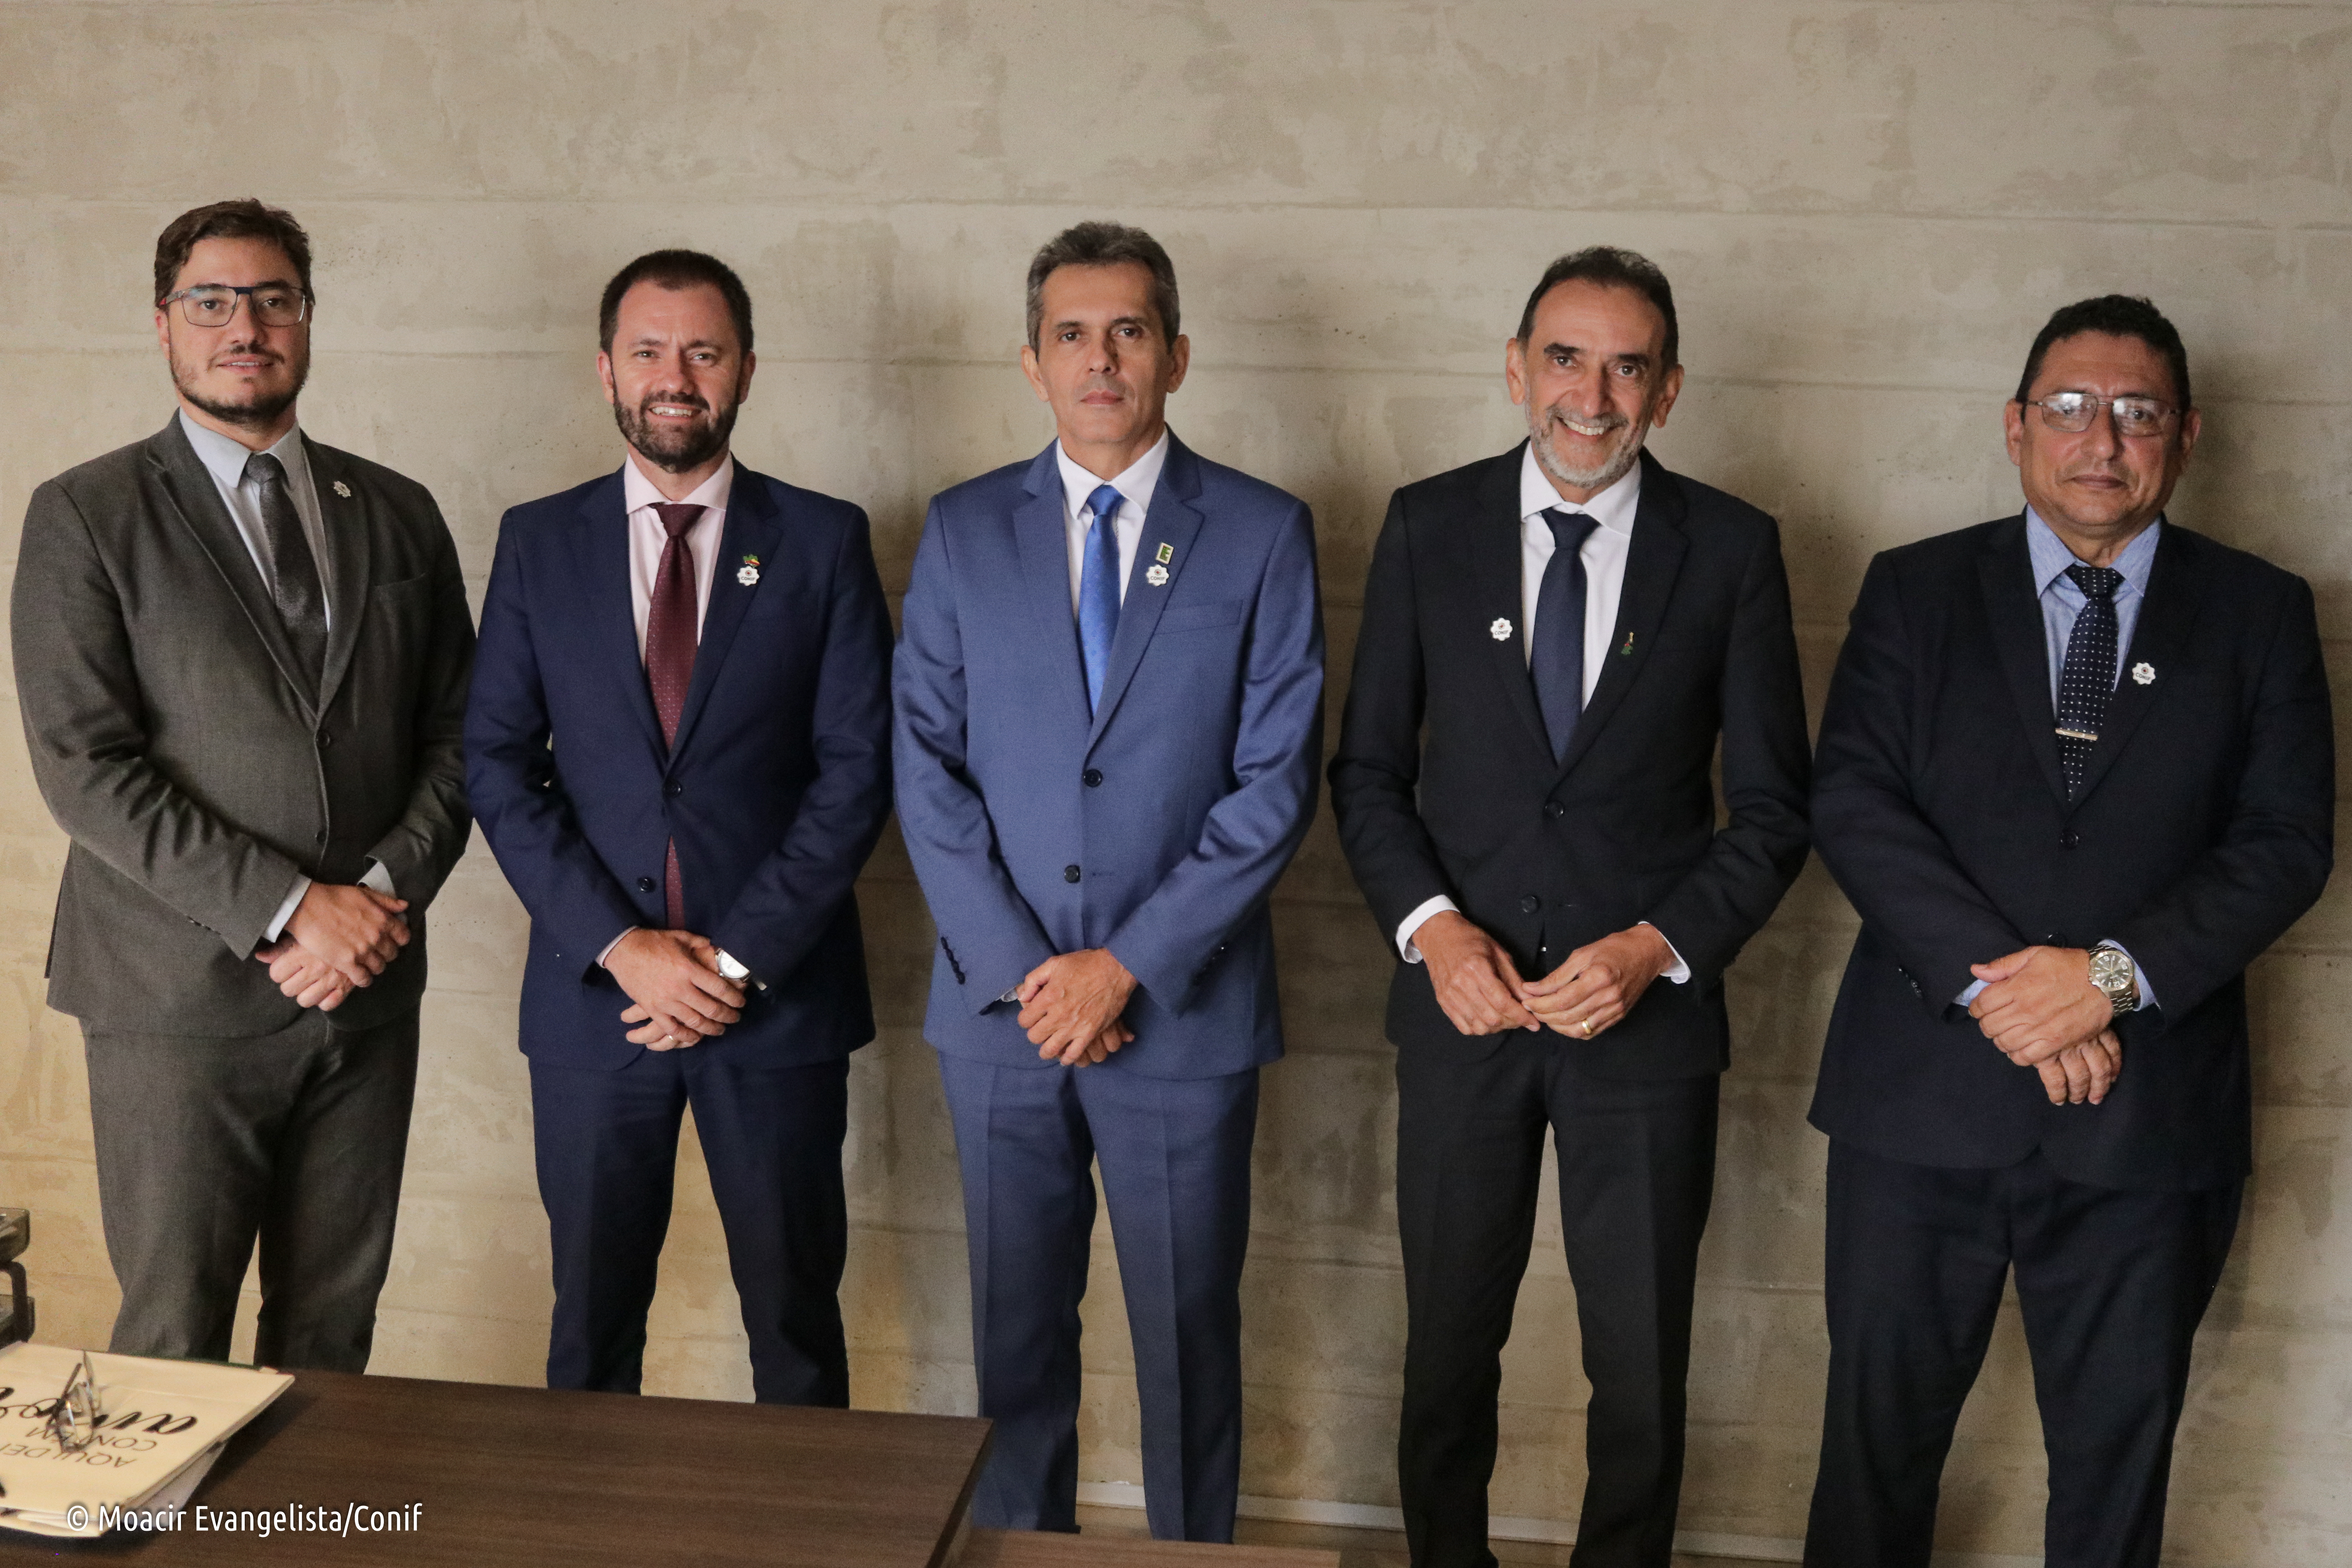 O novo presidente do Conif, professor Elias, ladeado pelos diretores eleitos professores Rafael e Júlio (à esquerda) e professores Carlos e Jaime (à direita)